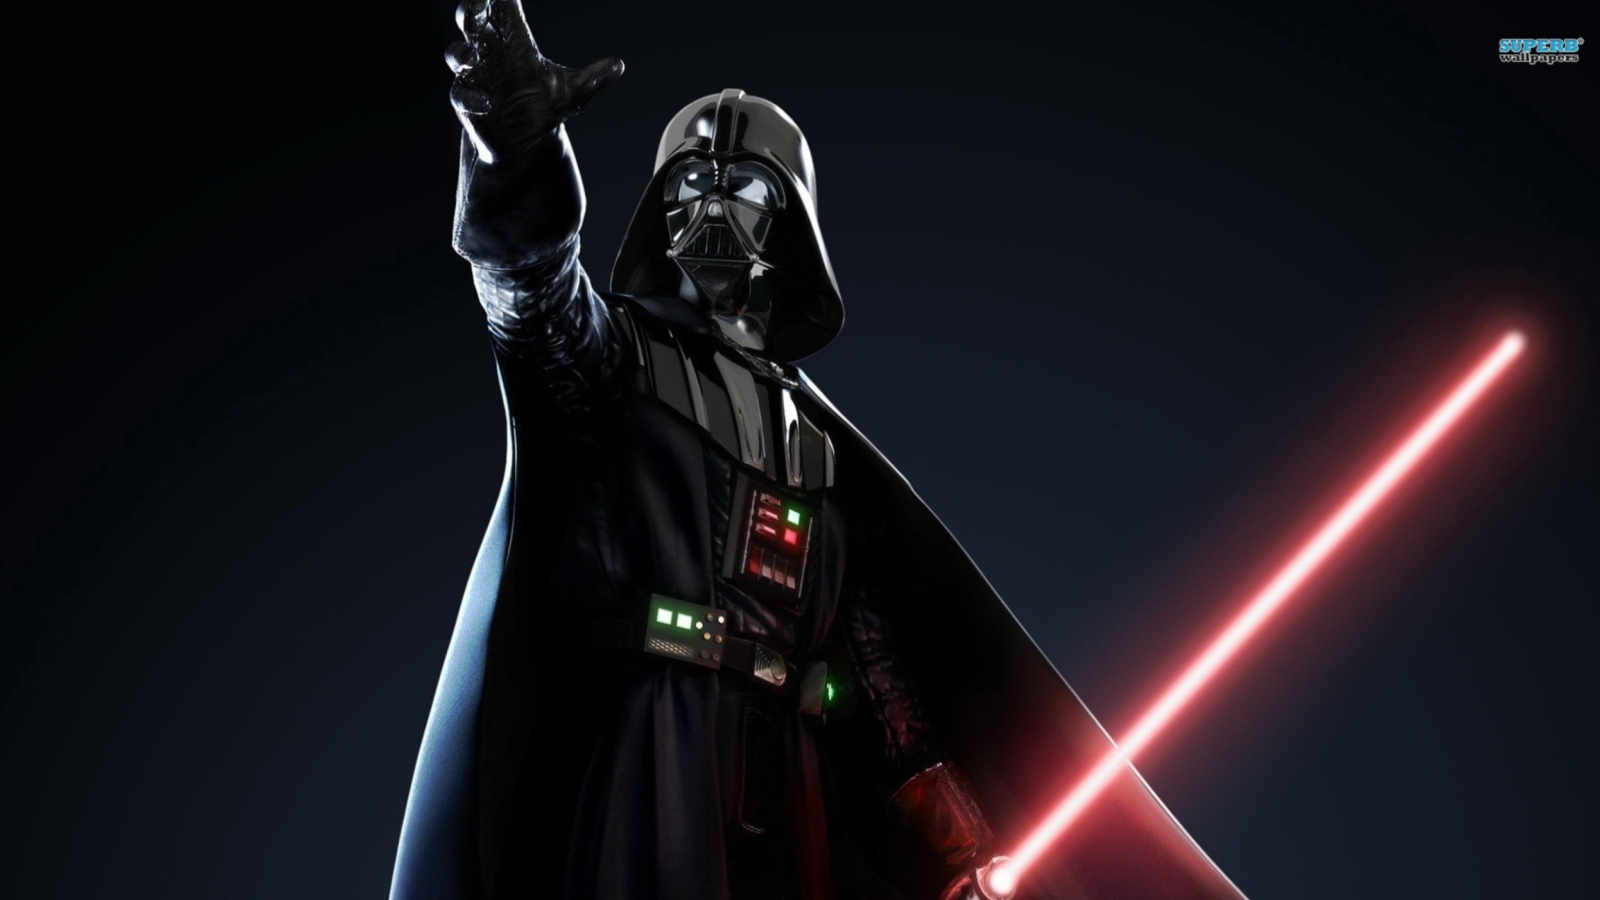 Sfondi Darth Vader 1600x900